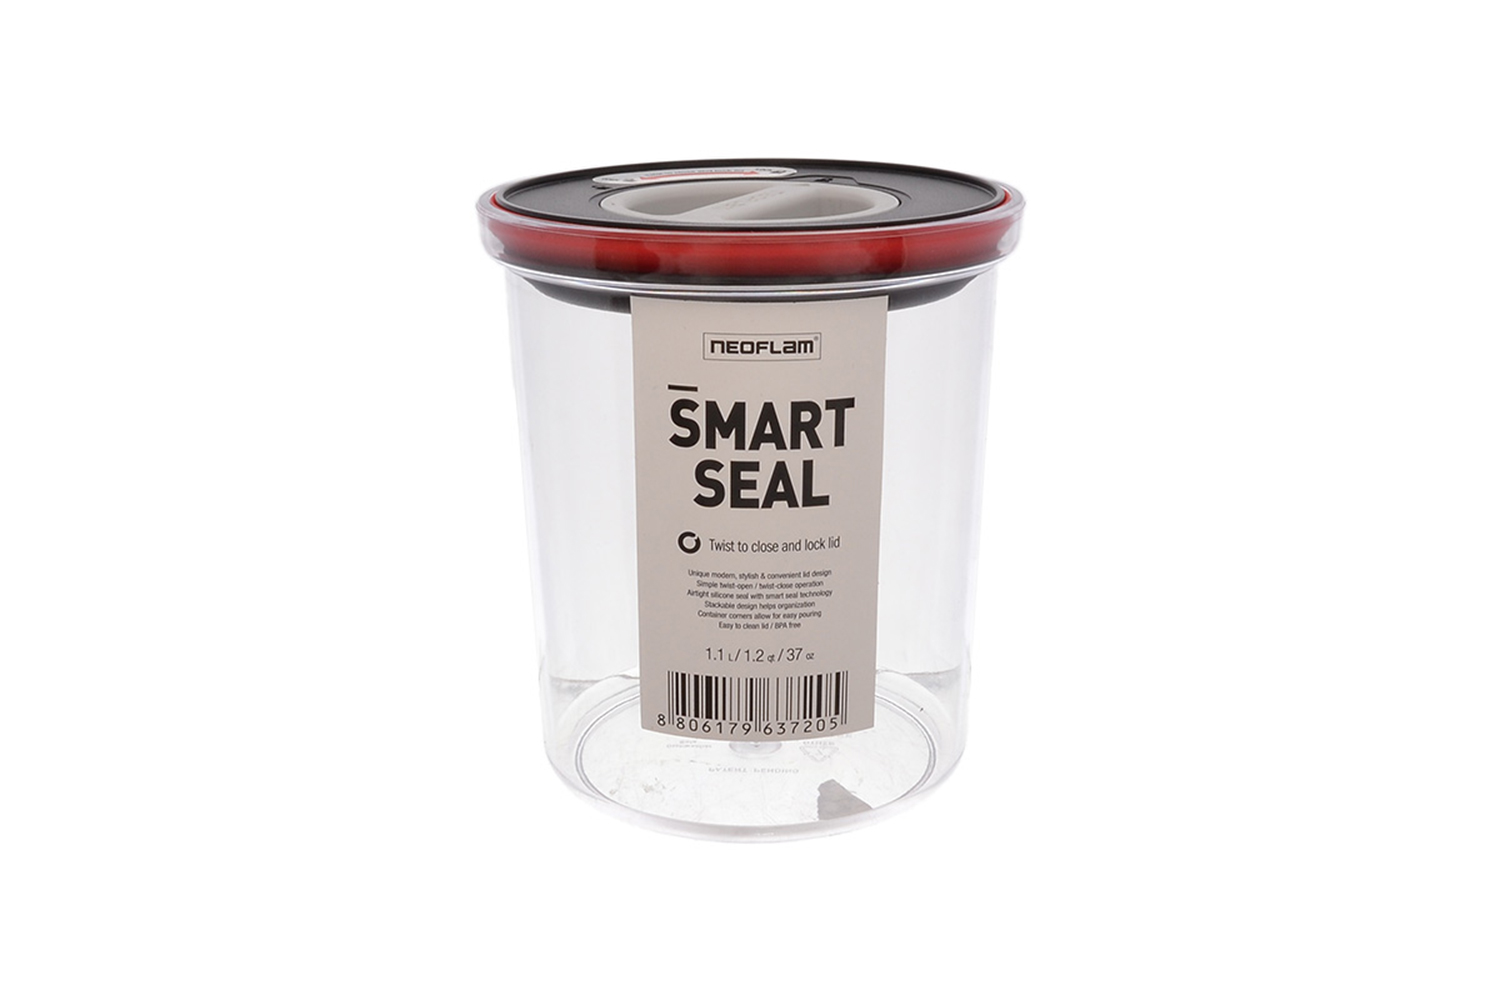 Контейнер с крышкой Smart Seal